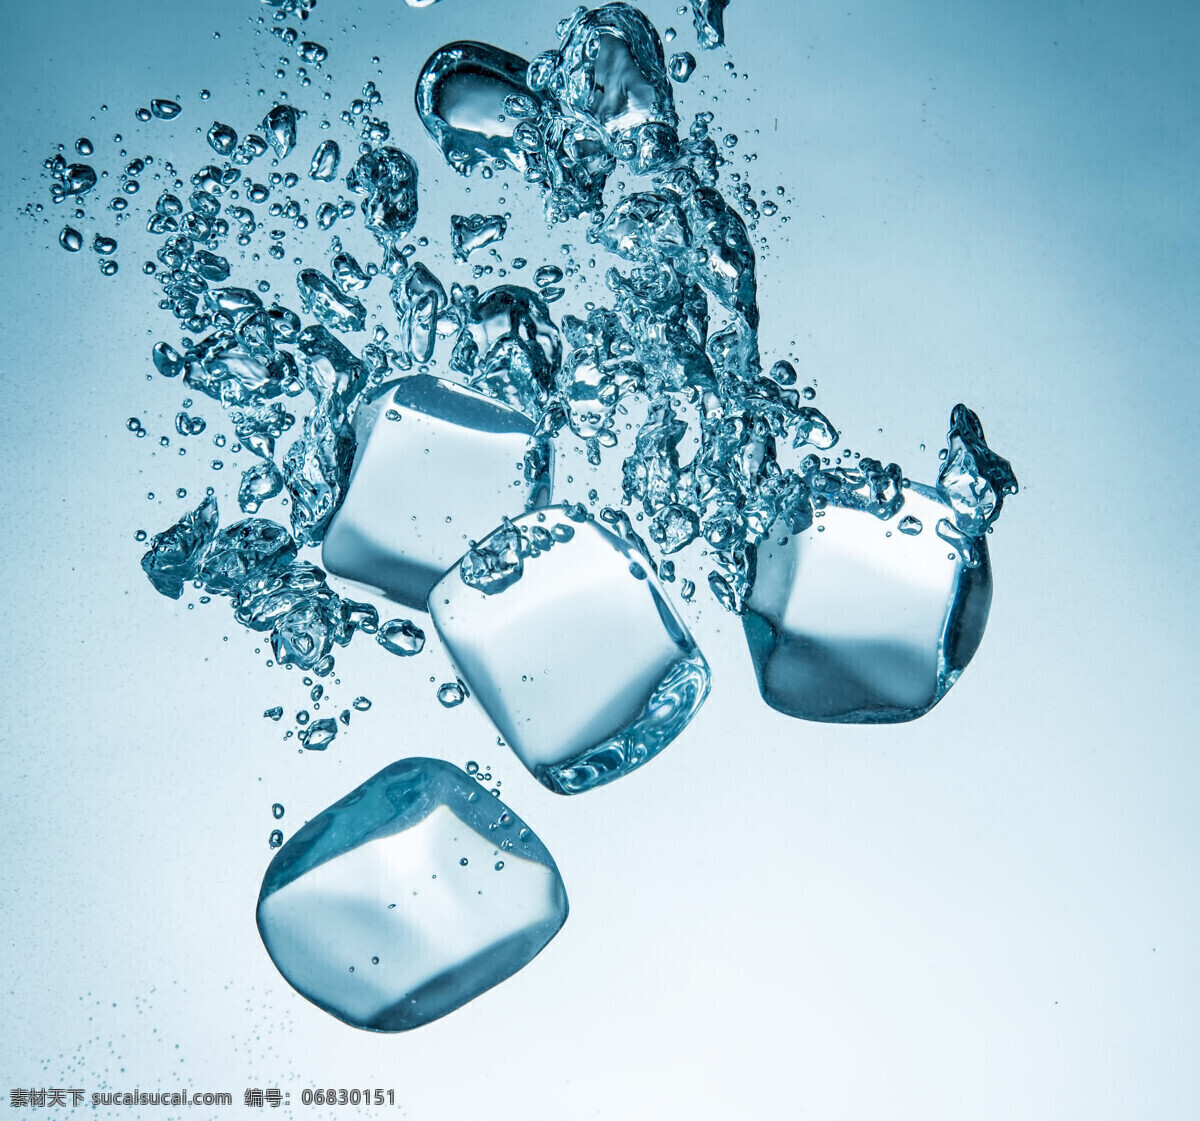 水平面 液体 夏季主题 冰块 冰块设计 水 水滴 落入 水里 冰爽 冰爽夏季 白色